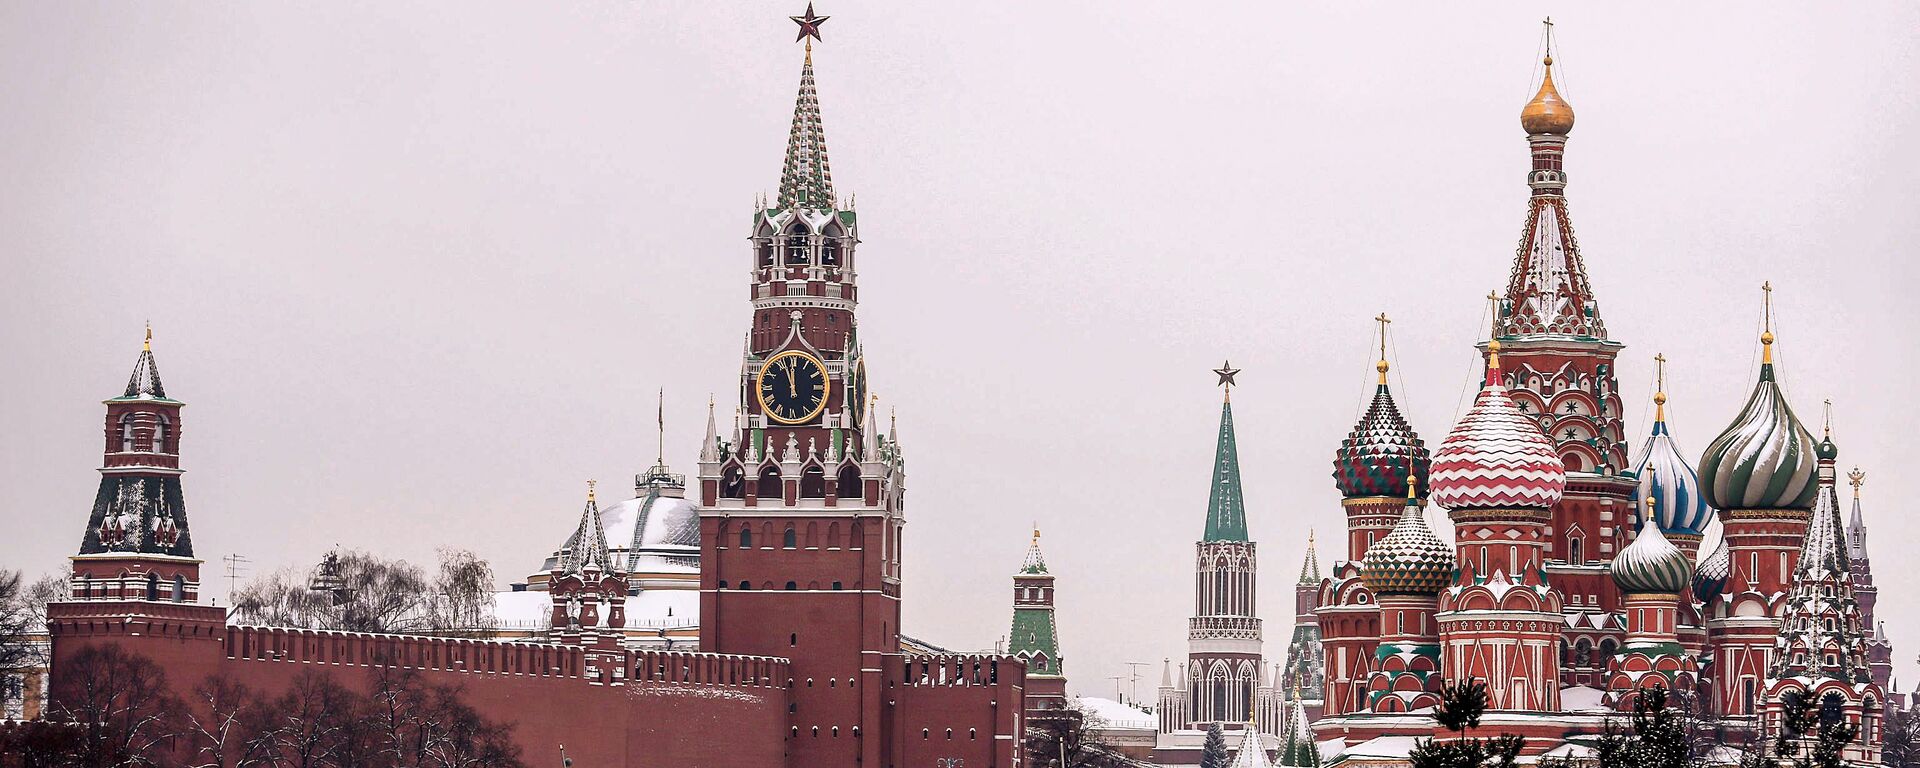 Вид на Покровский собор и Спасскую башню Московского Кремля - Sputnik Lietuva, 1920, 18.03.2021